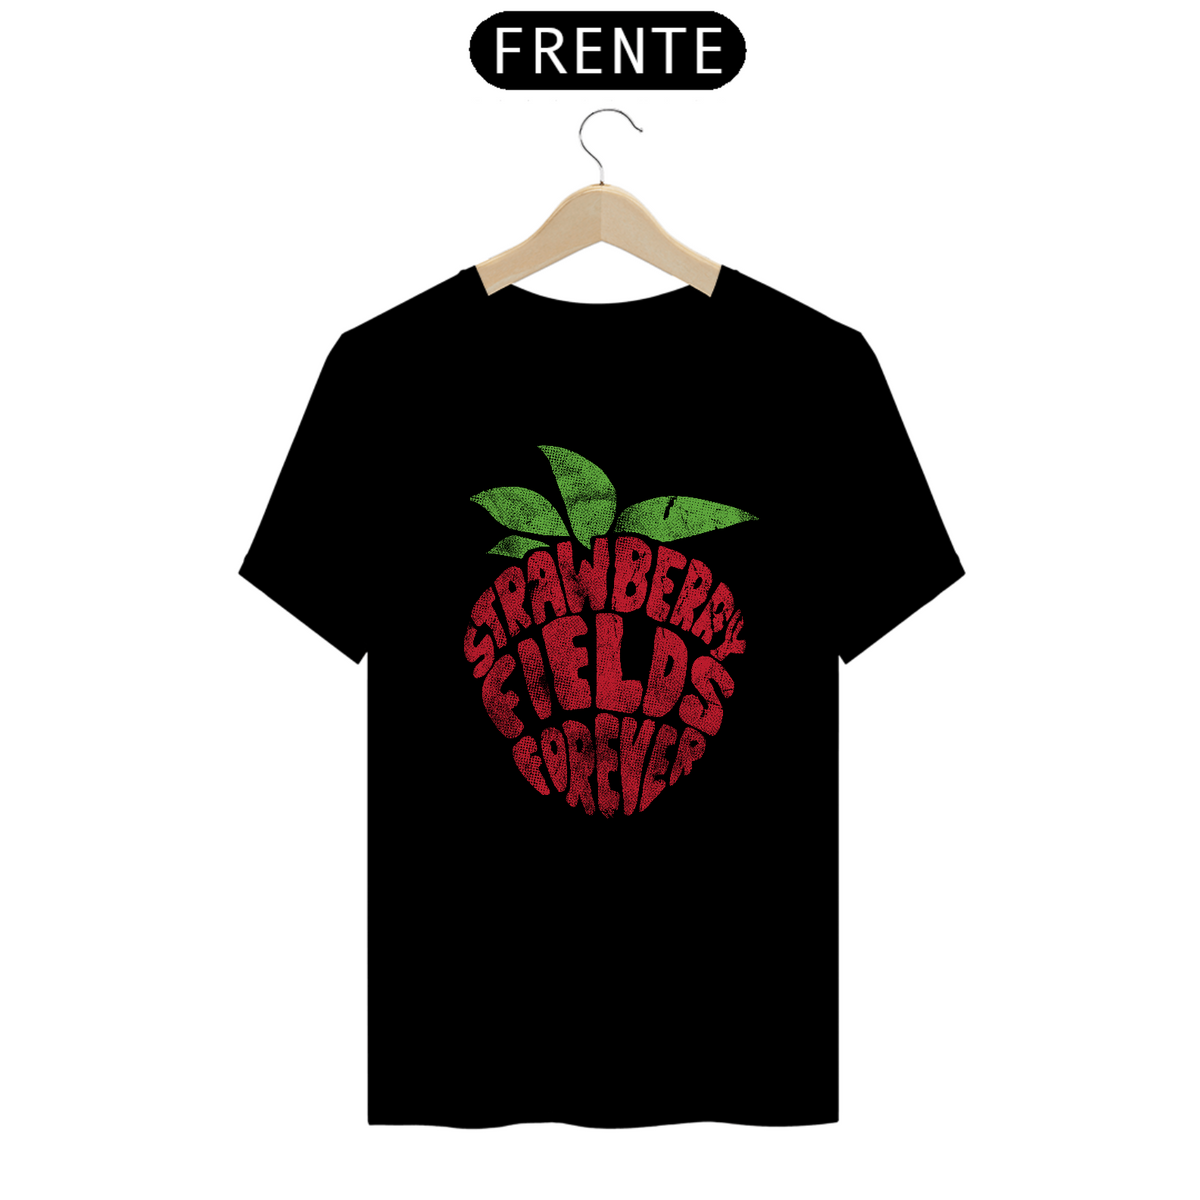 Nome do produto: Camiseta strawberry field forever | Beatles